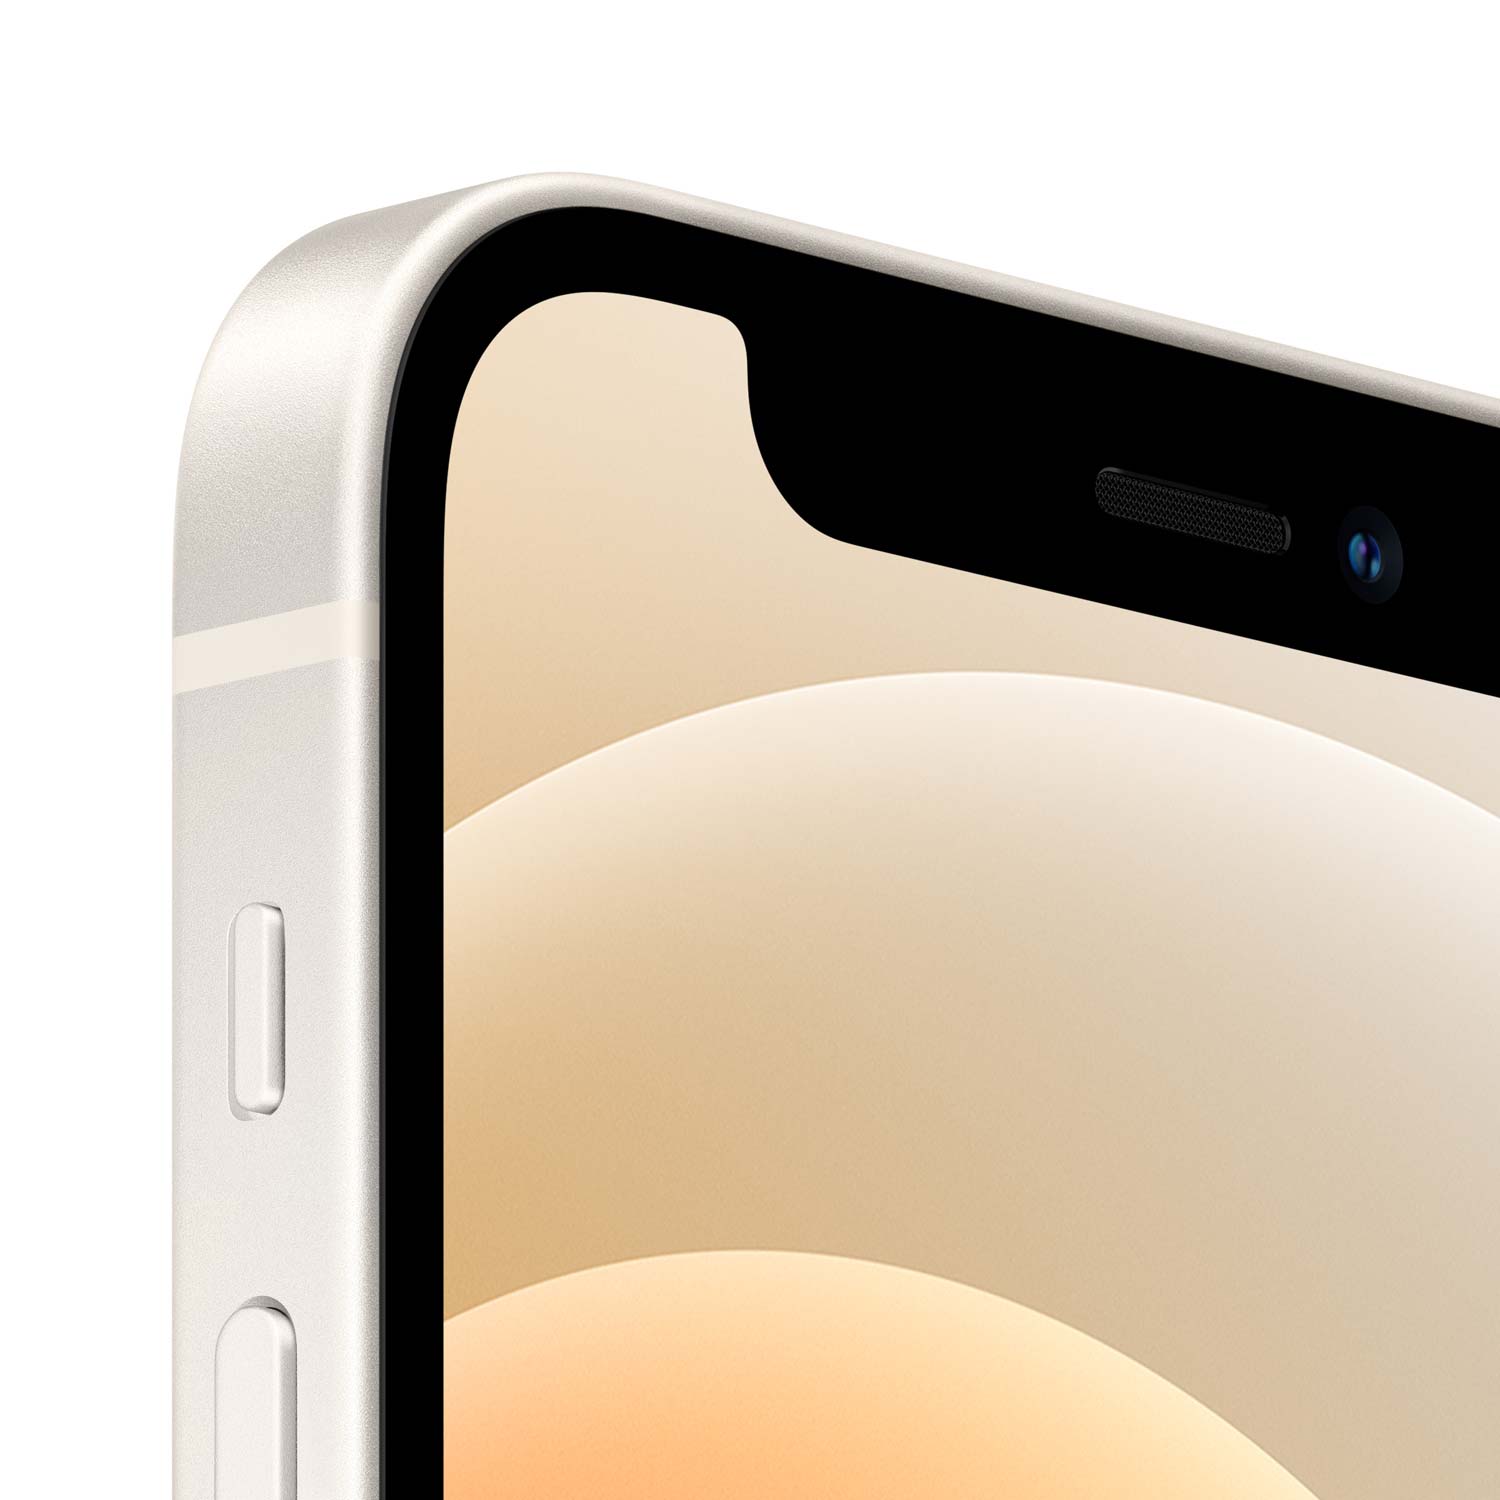 Apple iPhone 12 mini - Weiß - 64GB